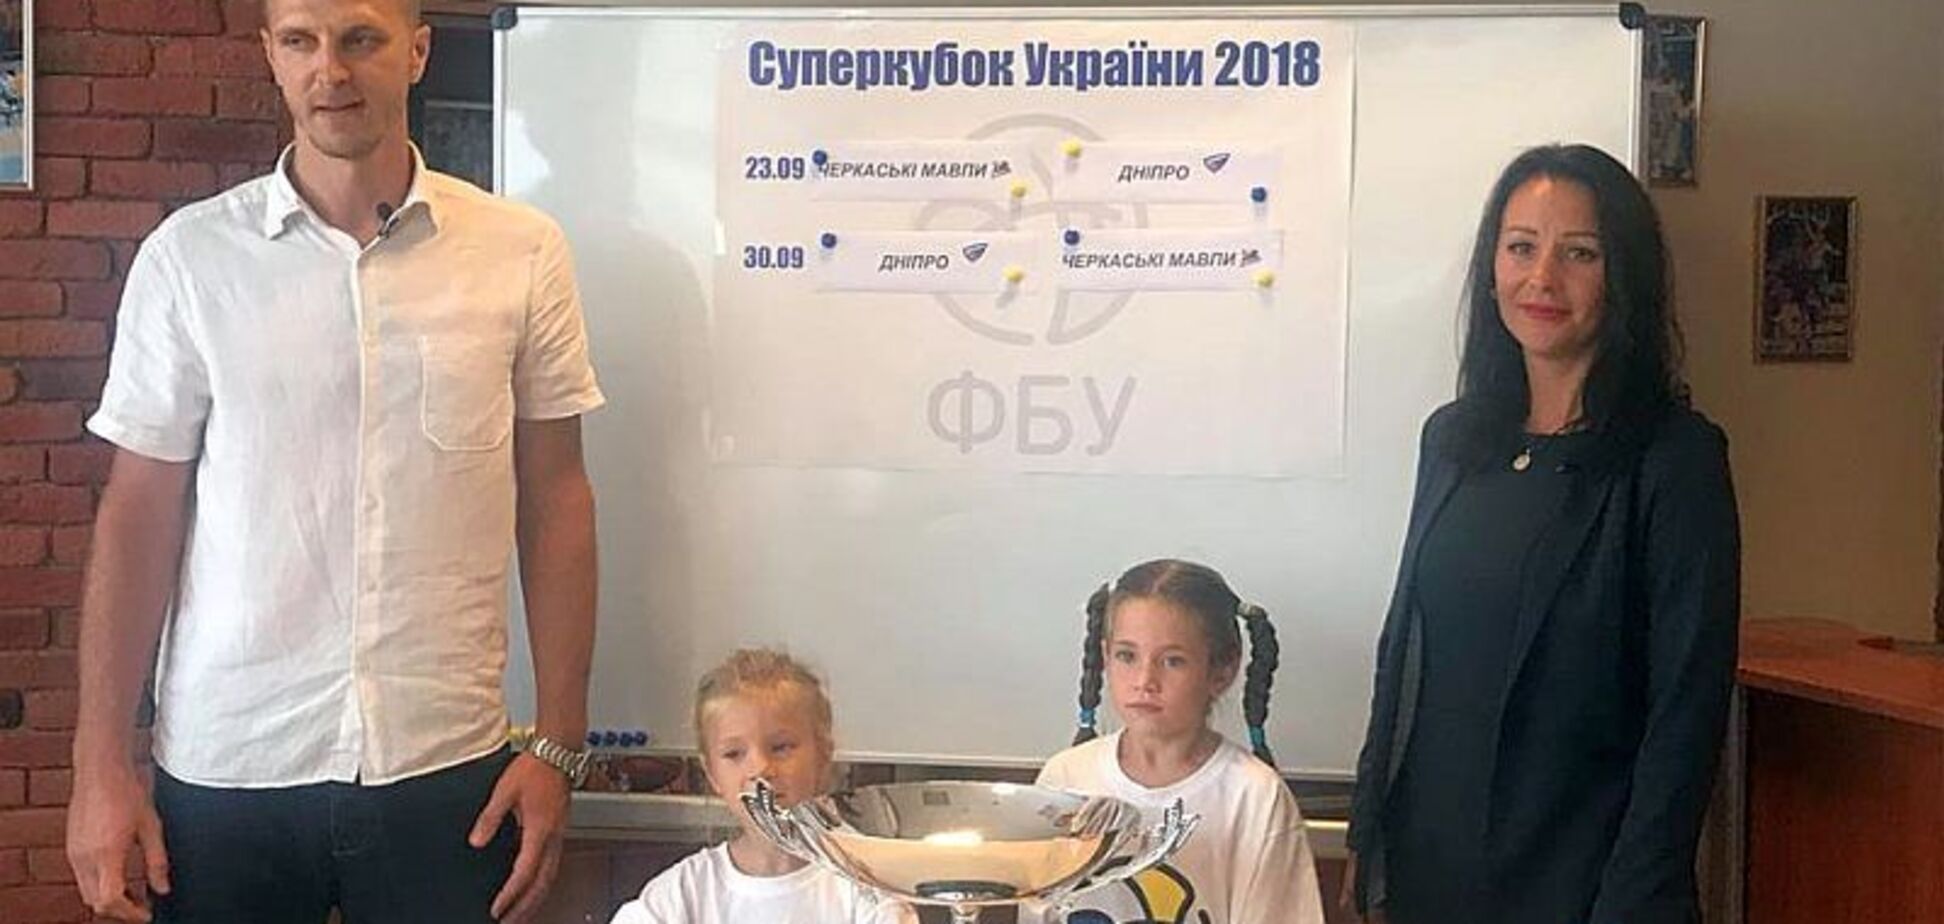 Суперкубок України: ФБУ провела жеребкування